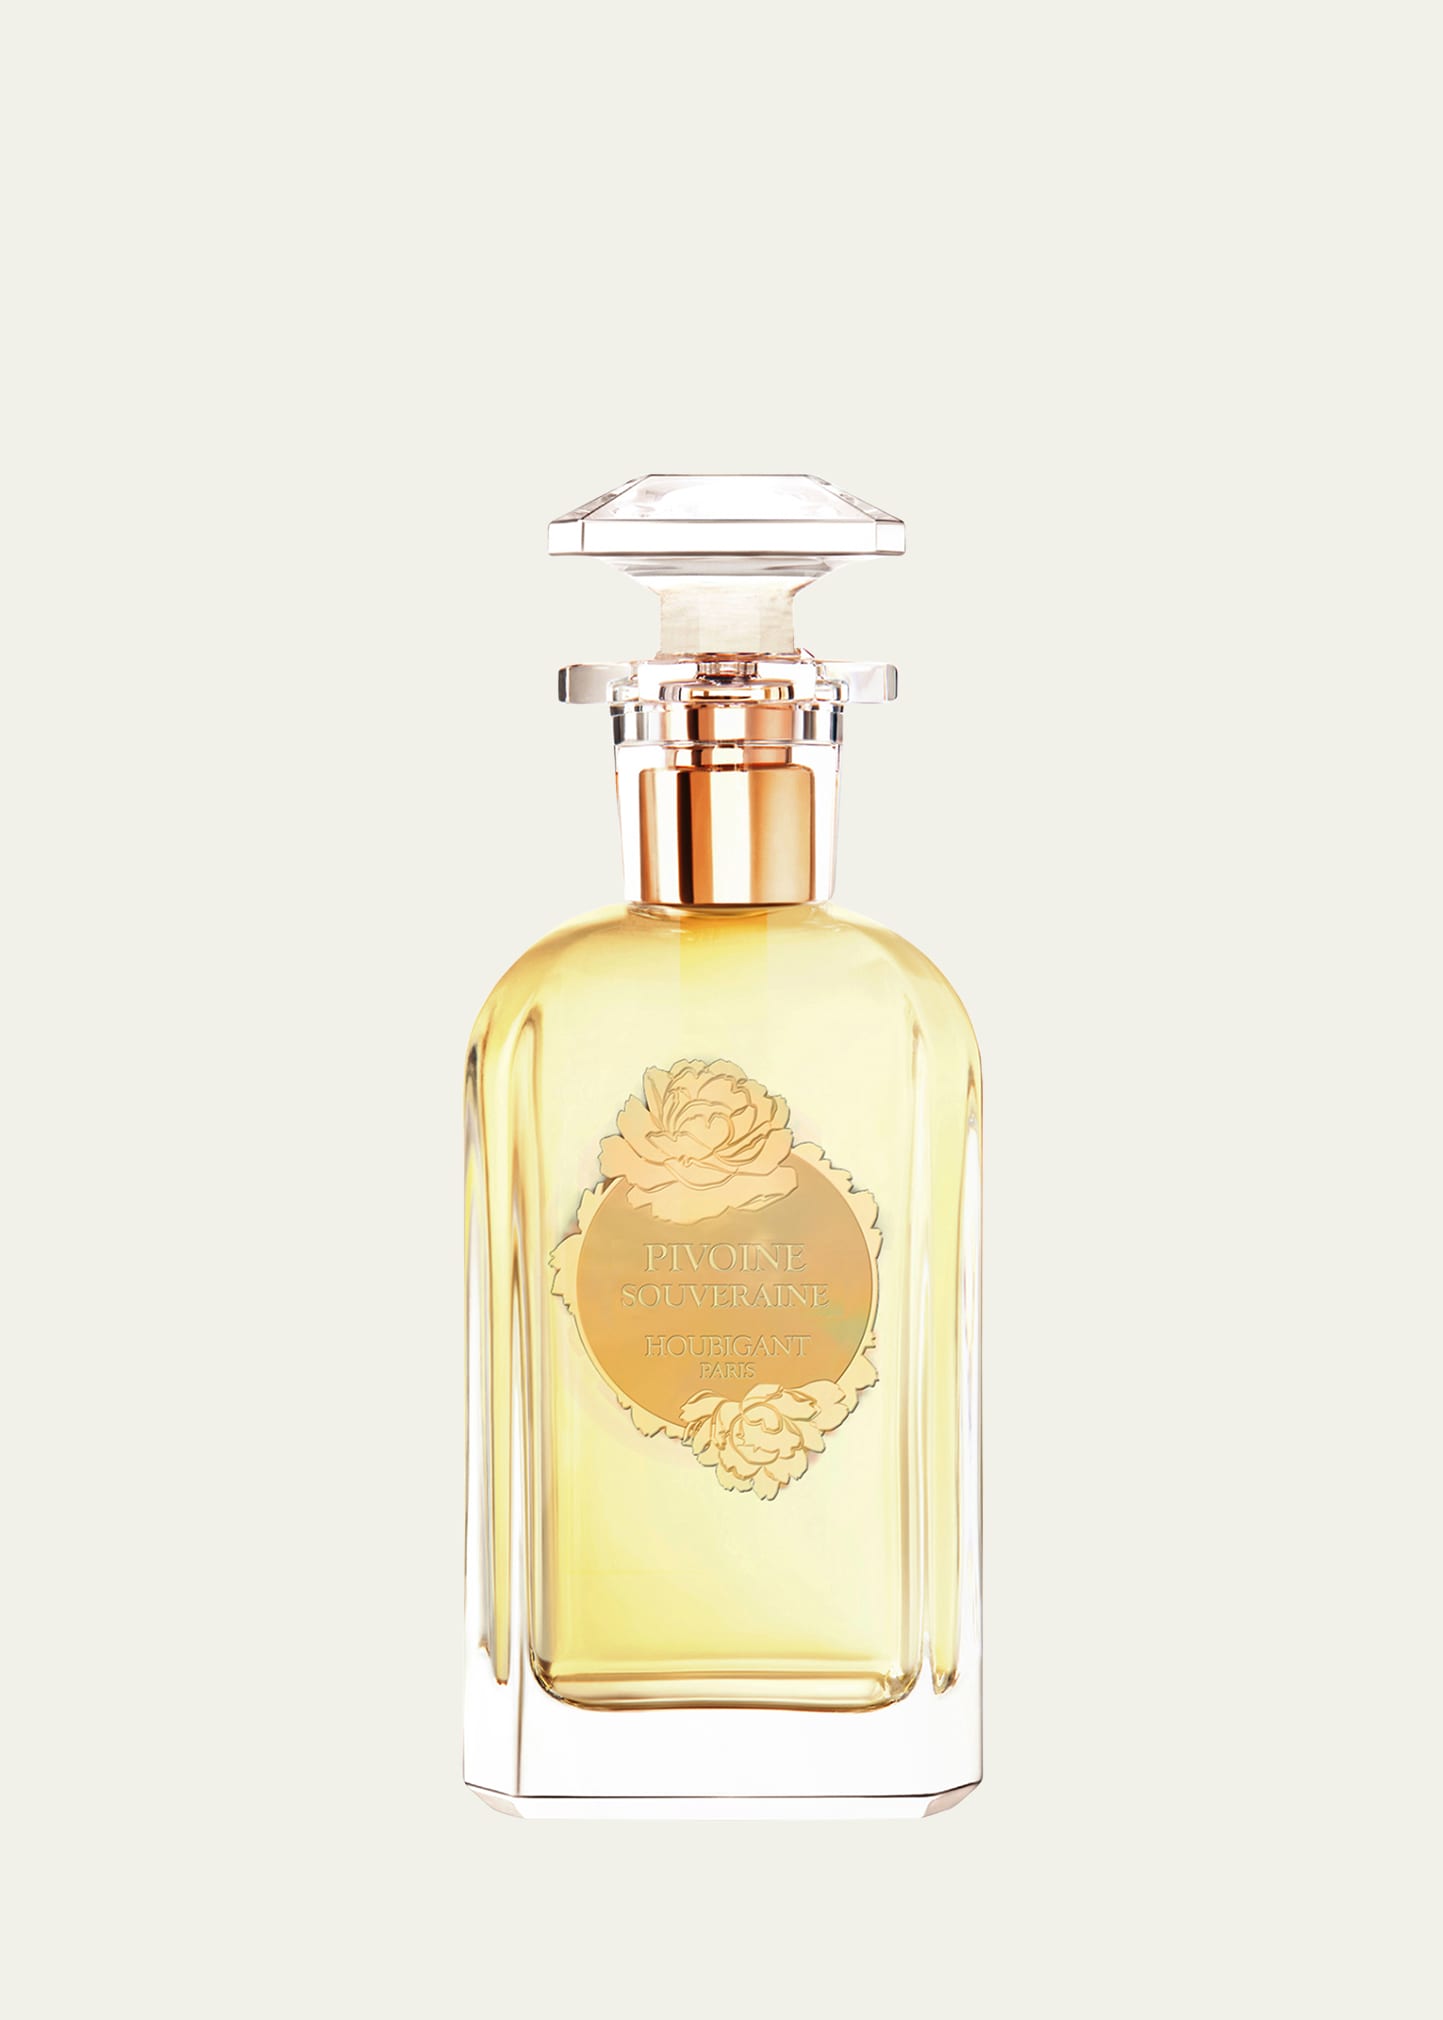 Houbigant Paris Pivoine Souveraine Eau de Parfum, 3.4 oz. | Bergdorf Goodman